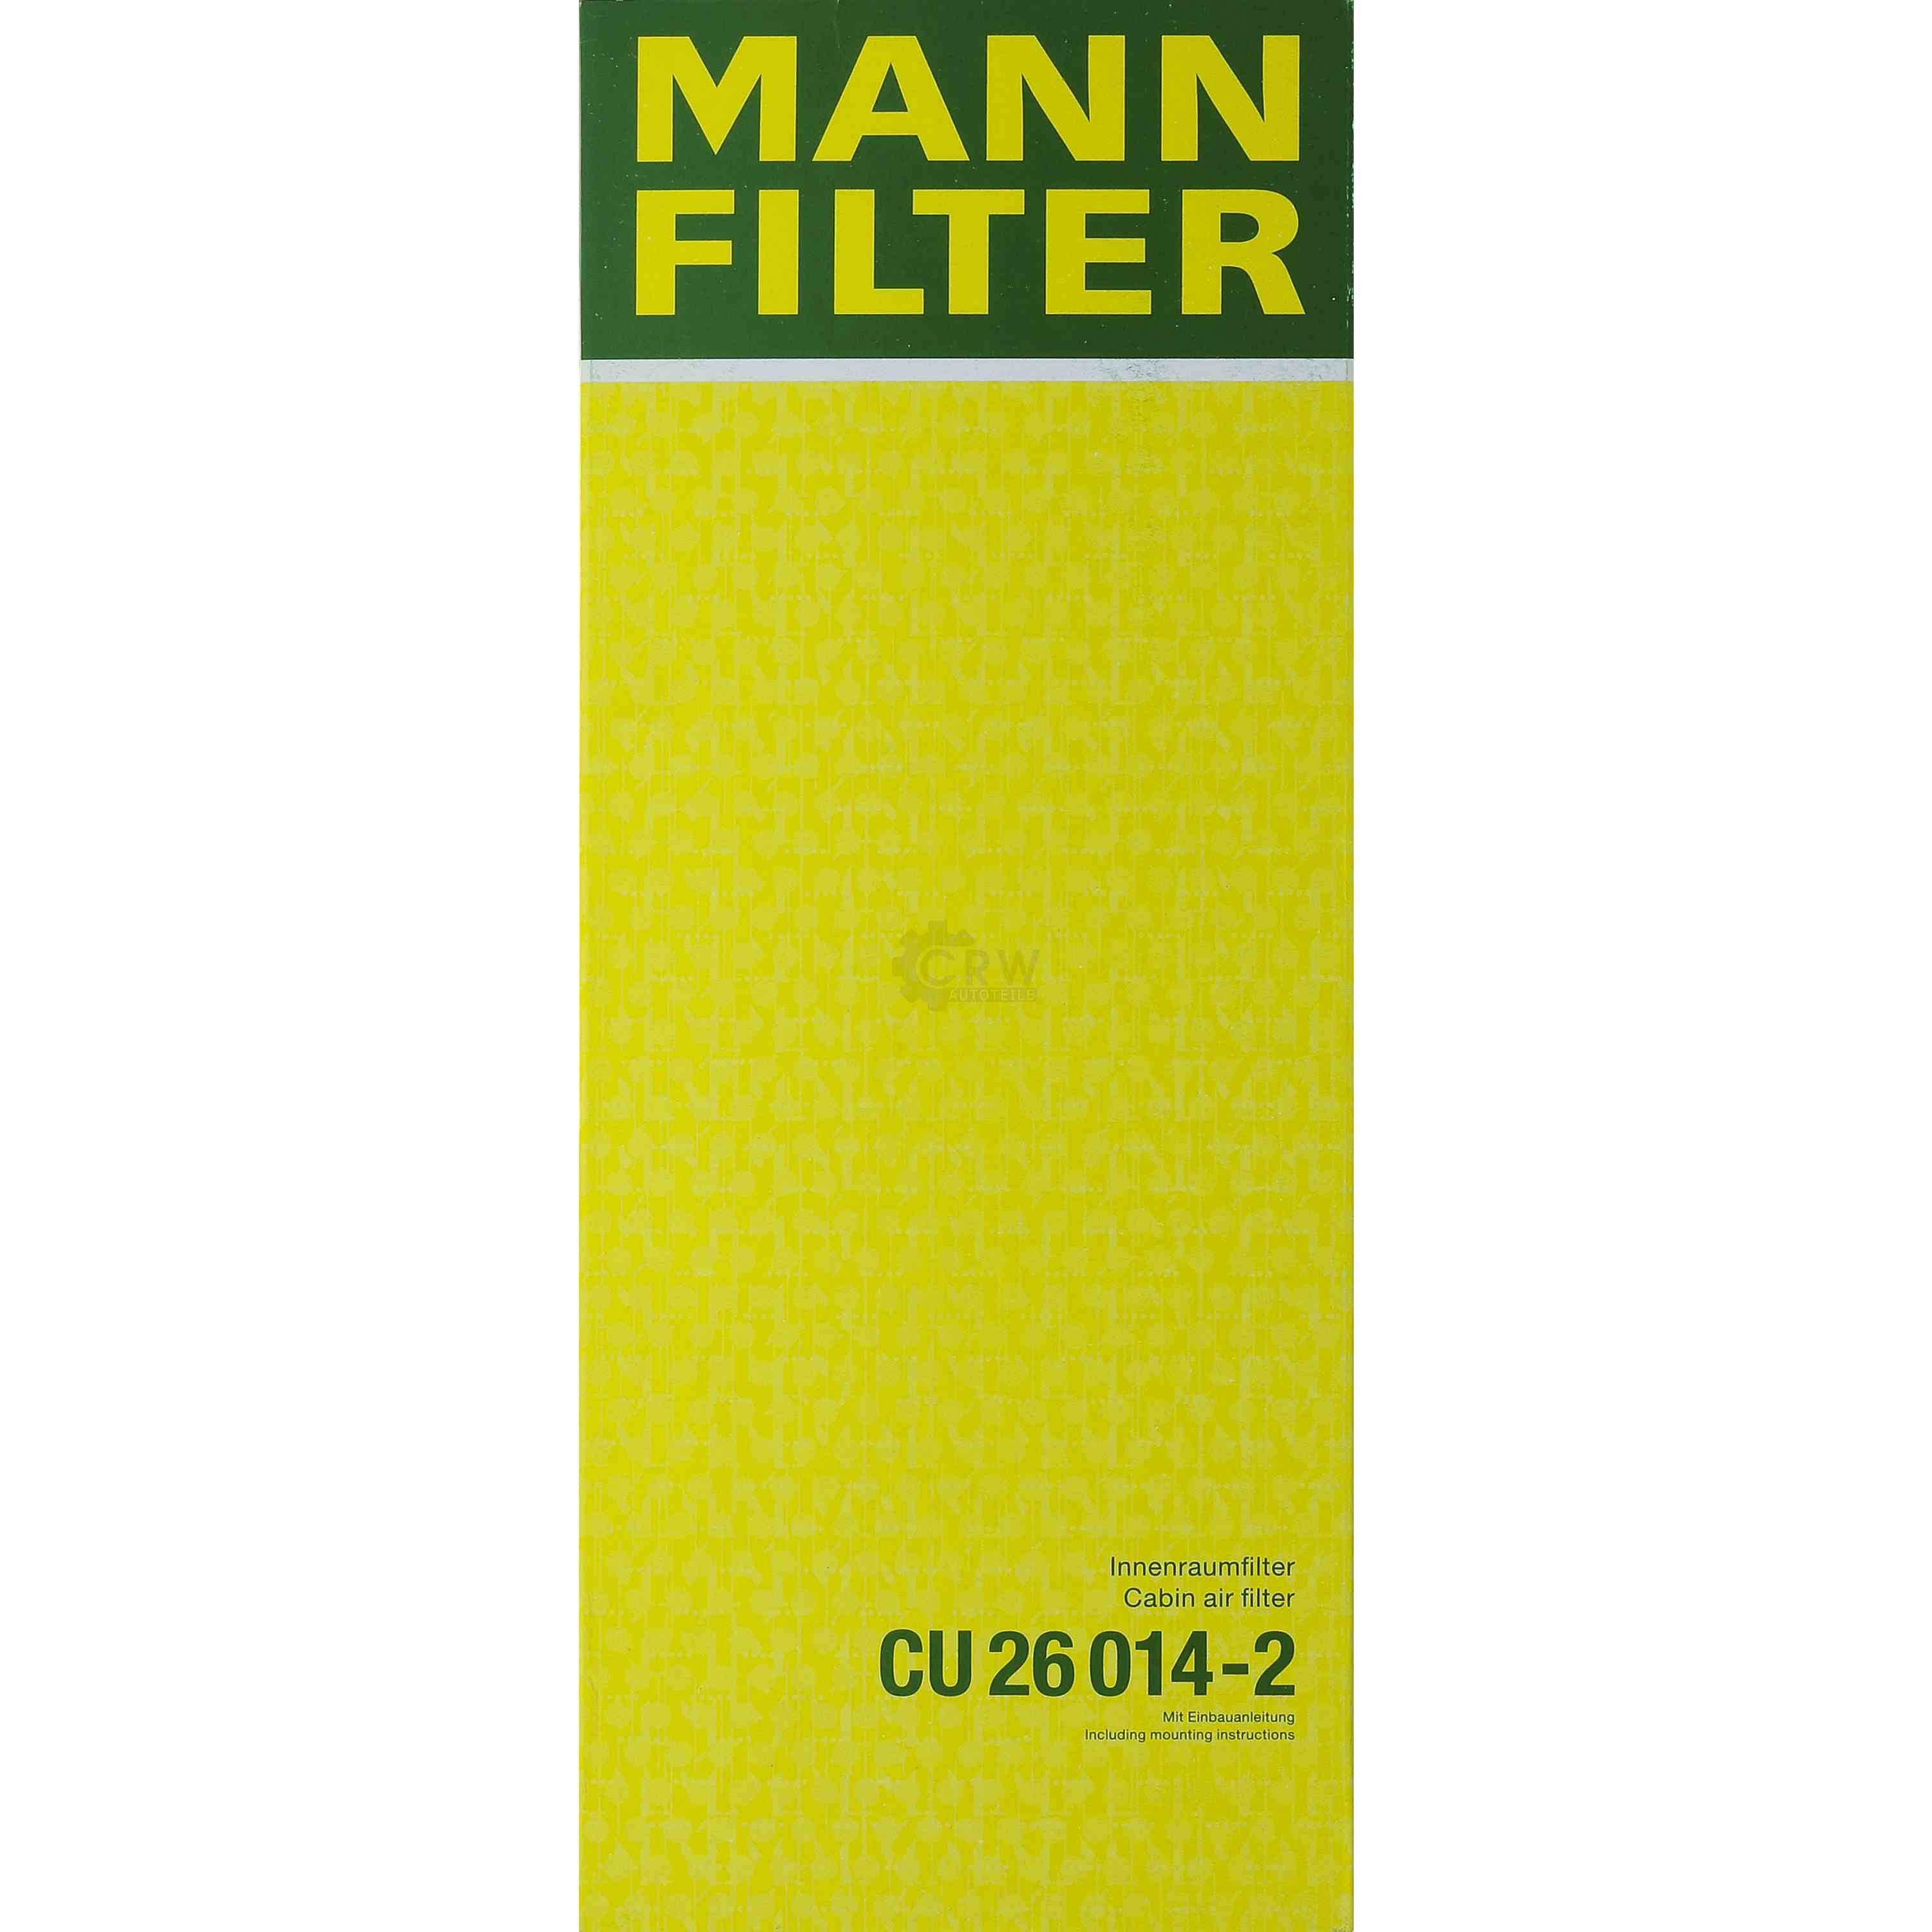 MANN-FILTER Innenraumfilter Pollenfilter CU 26 014-2